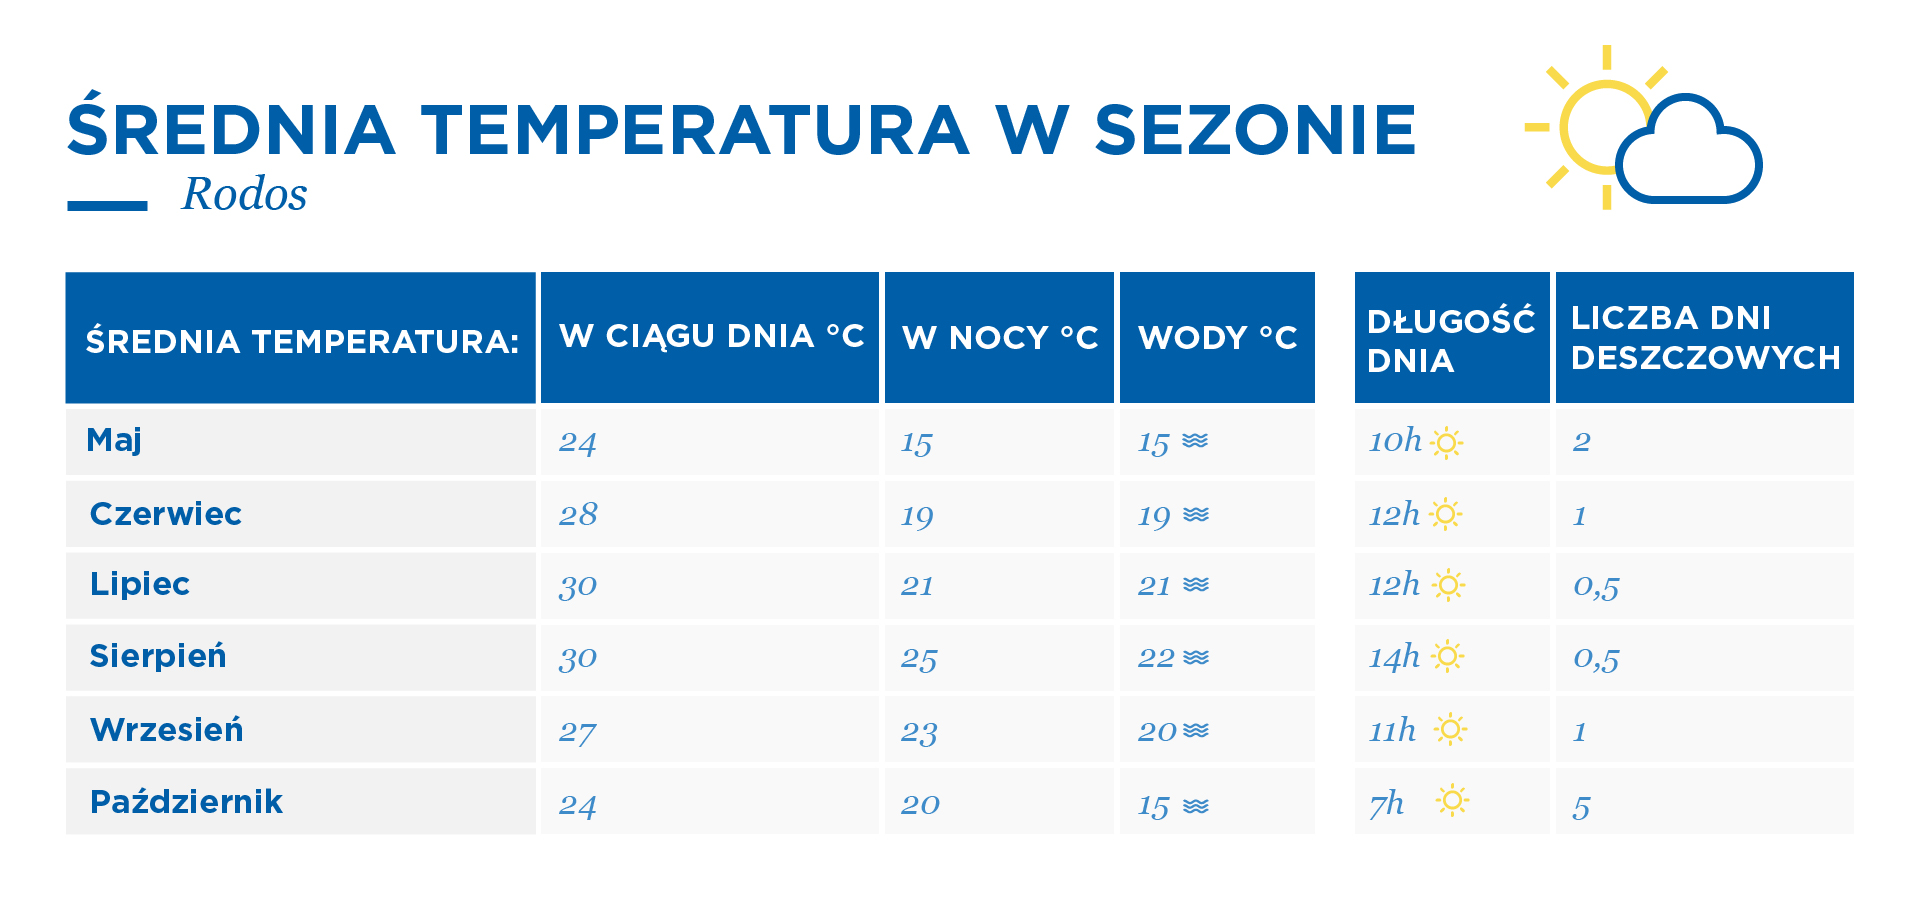 Rodos - średnie temperatury tabela